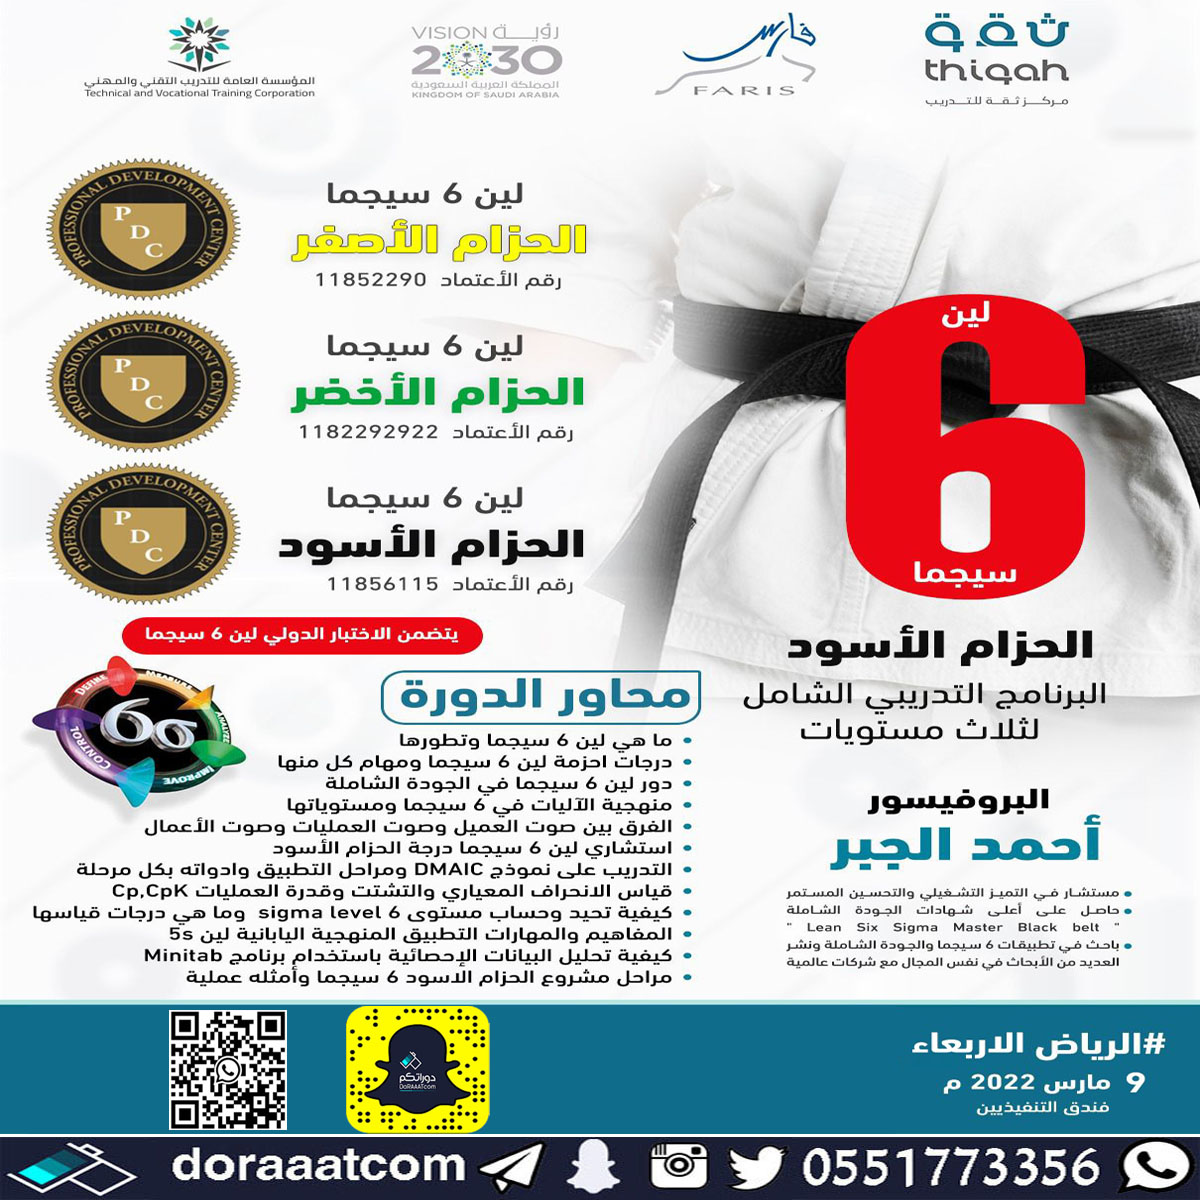 الرياض – برنامج منهجية 6 سيجما ( الحزام الأصفر + الحزام الأخضر + الحزام الأسود )